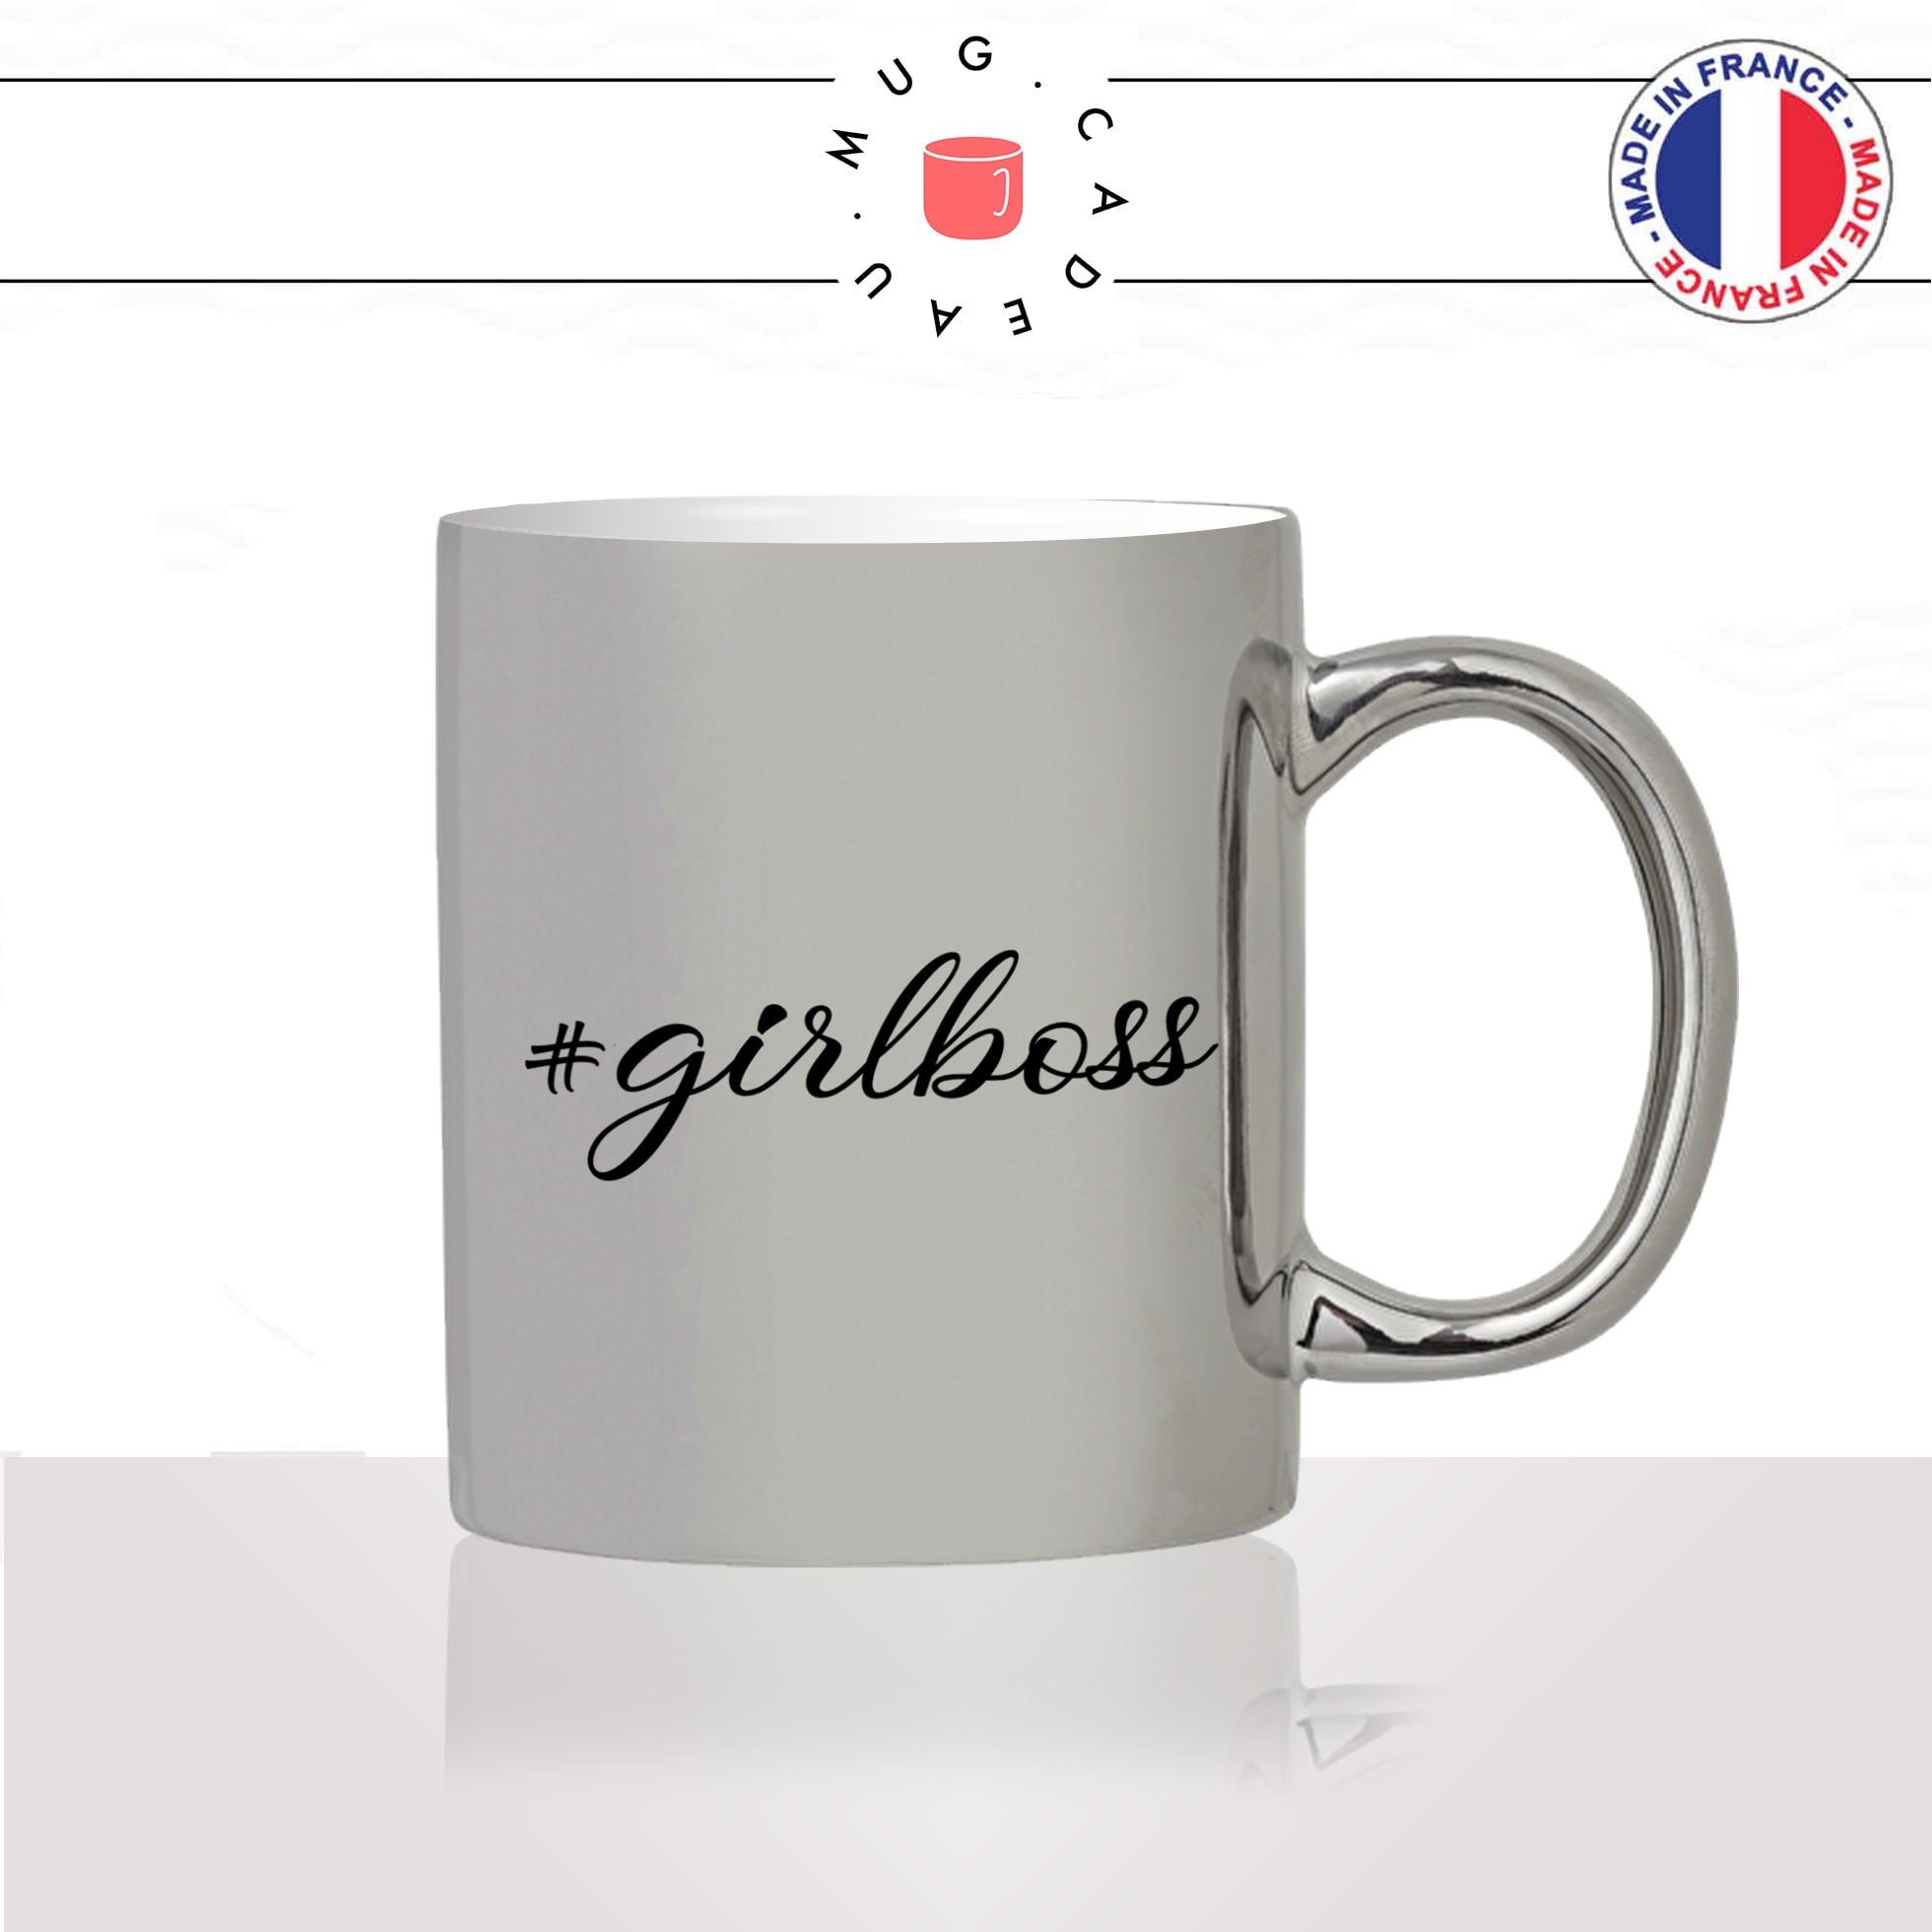 mug-tasse-argent-argenté-silver-hashtag-#-girlboss-patronne-femme-copine-collegue-decoration-humour-idée-cadeau-fun-cool-café-thé-original2-min